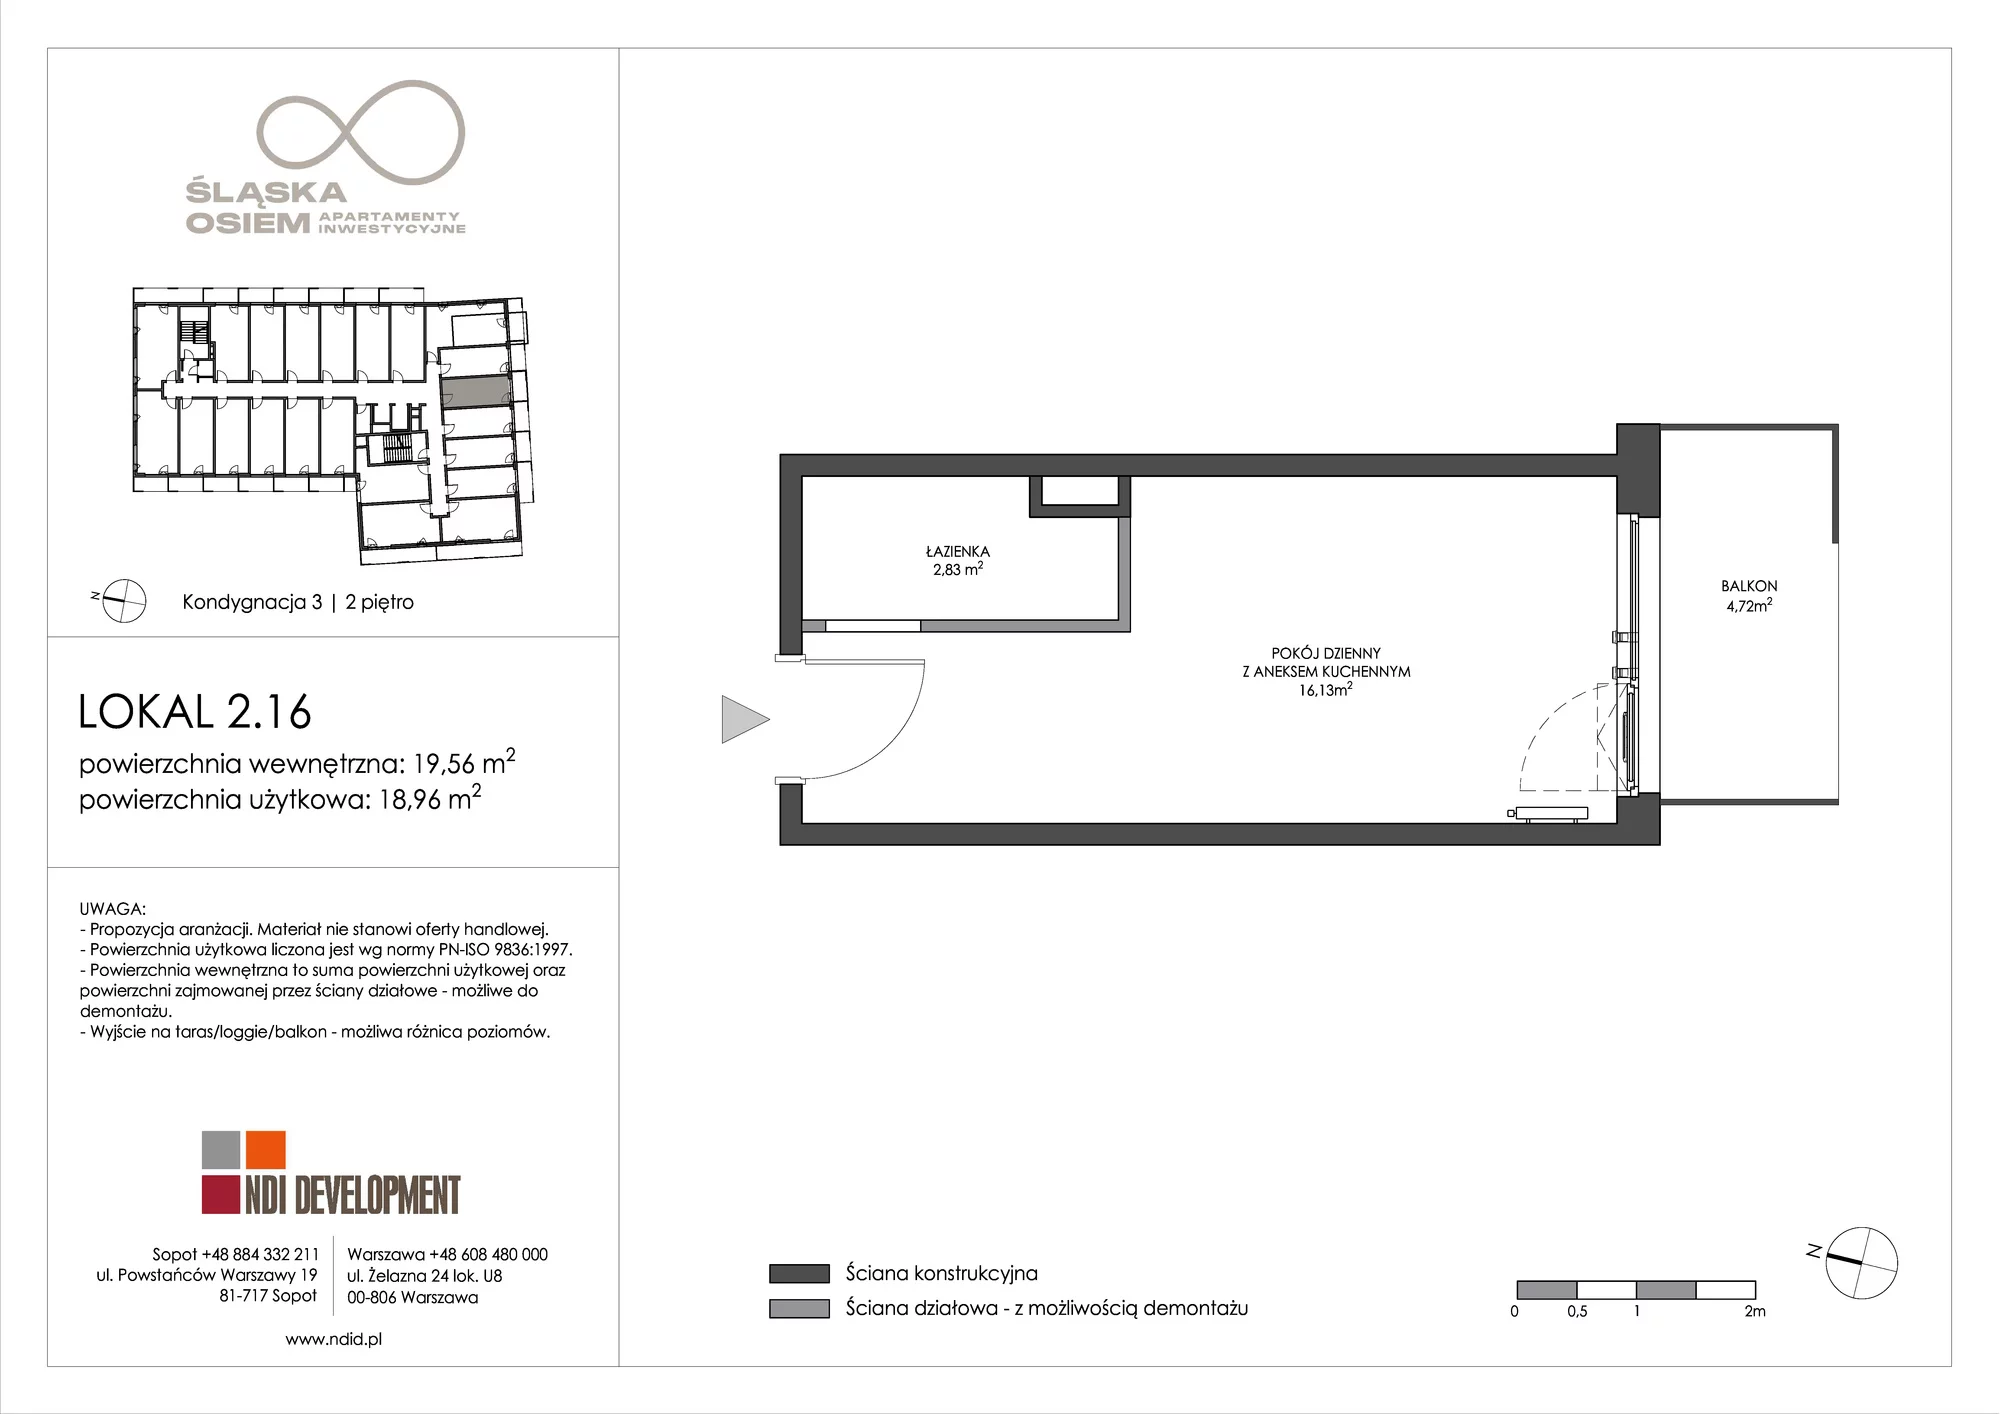 Apartament inwestycyjny 19,56 m², piętro 2, oferta nr 2.16, Śląska Osiem, Gdańsk, Przymorze, ul. Śląska 8